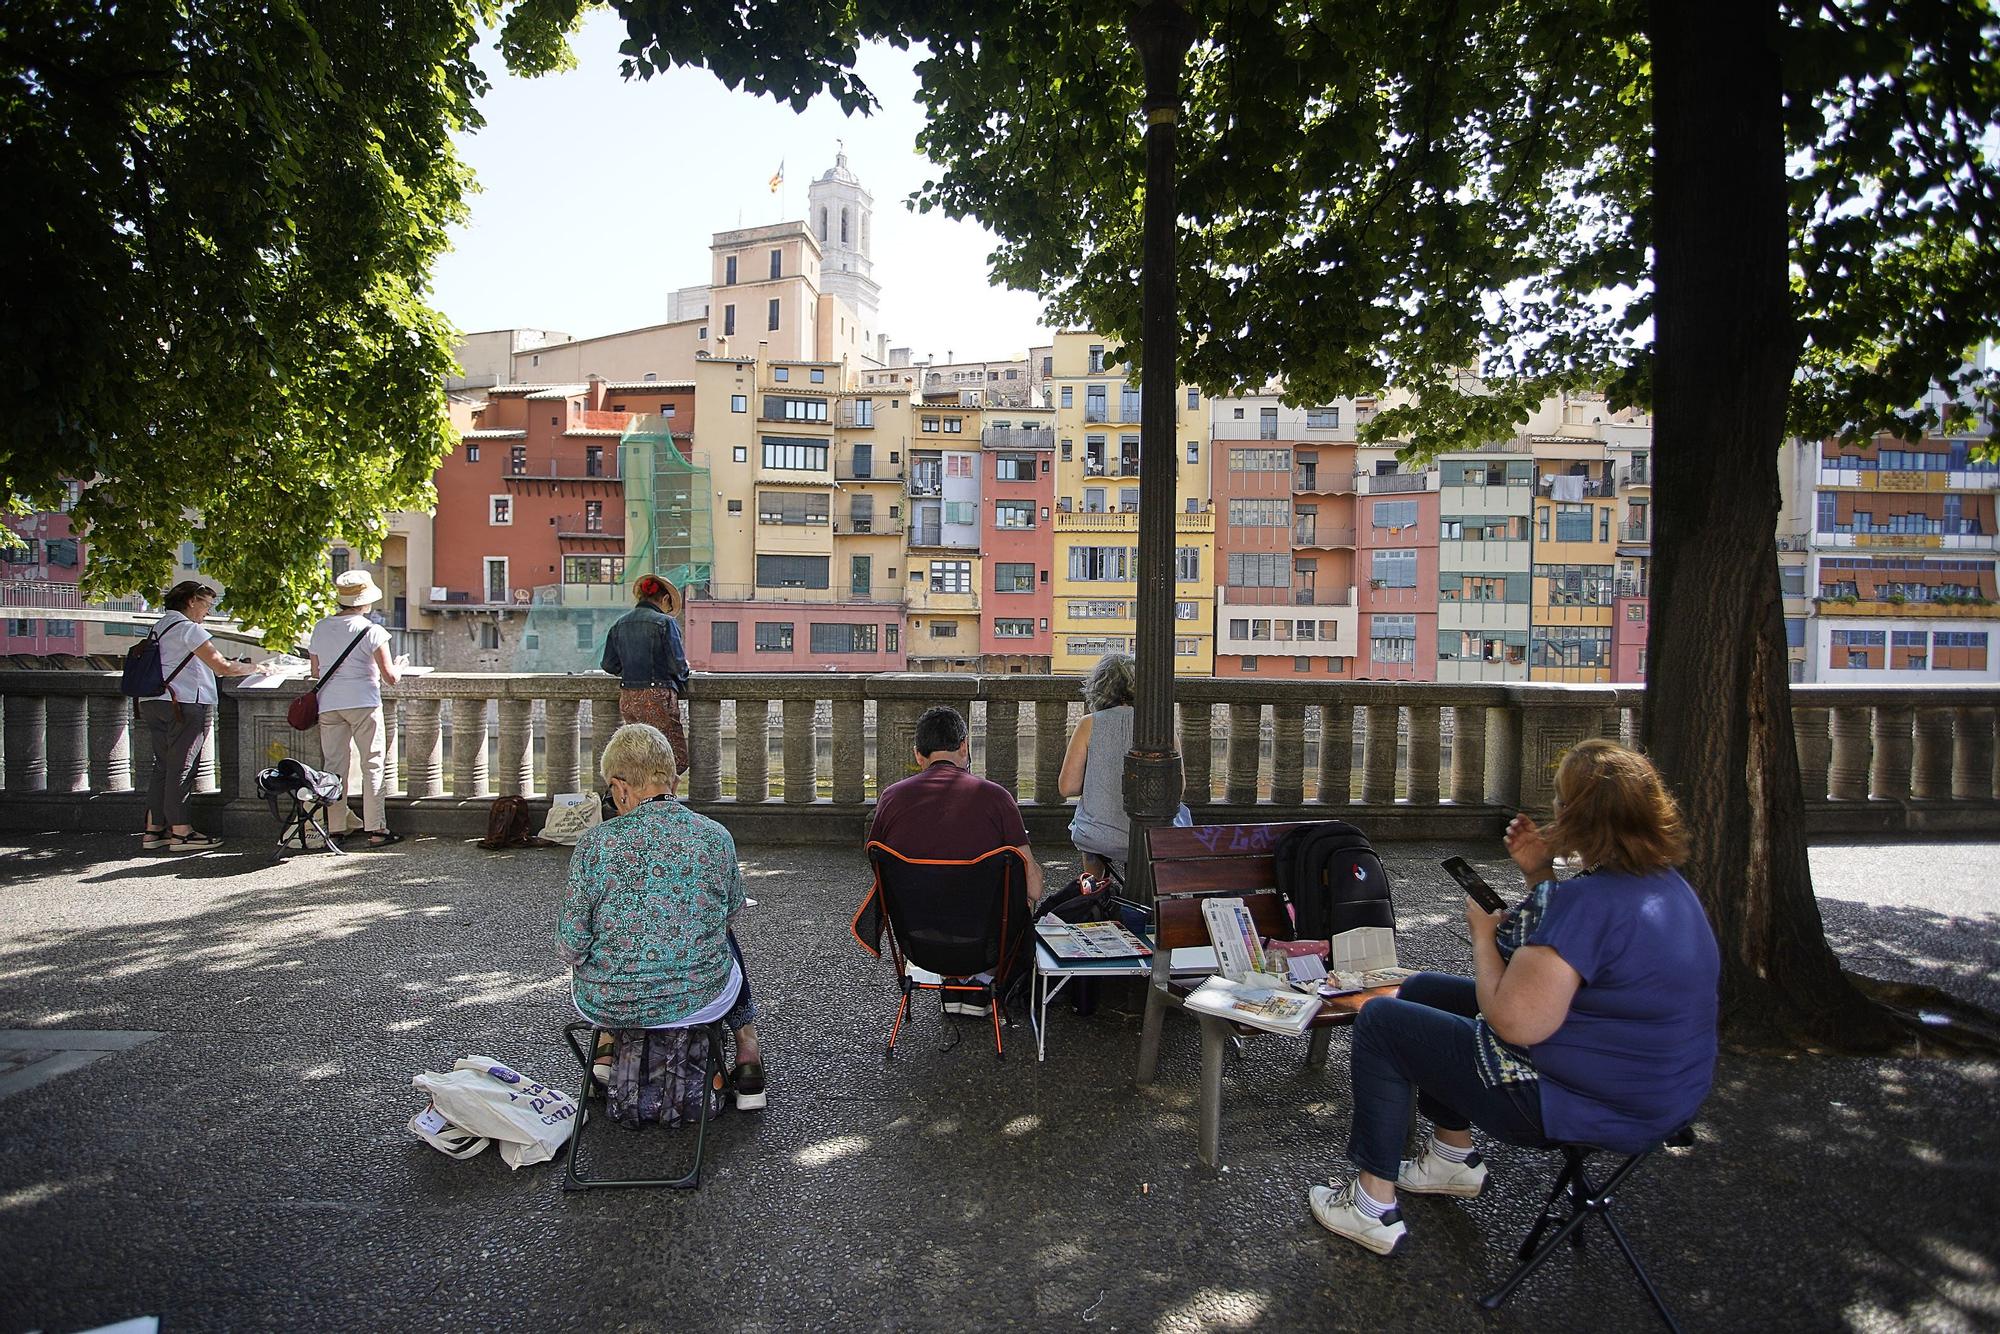 Trobada d’Urban Sketchers a la ciutat de Girona